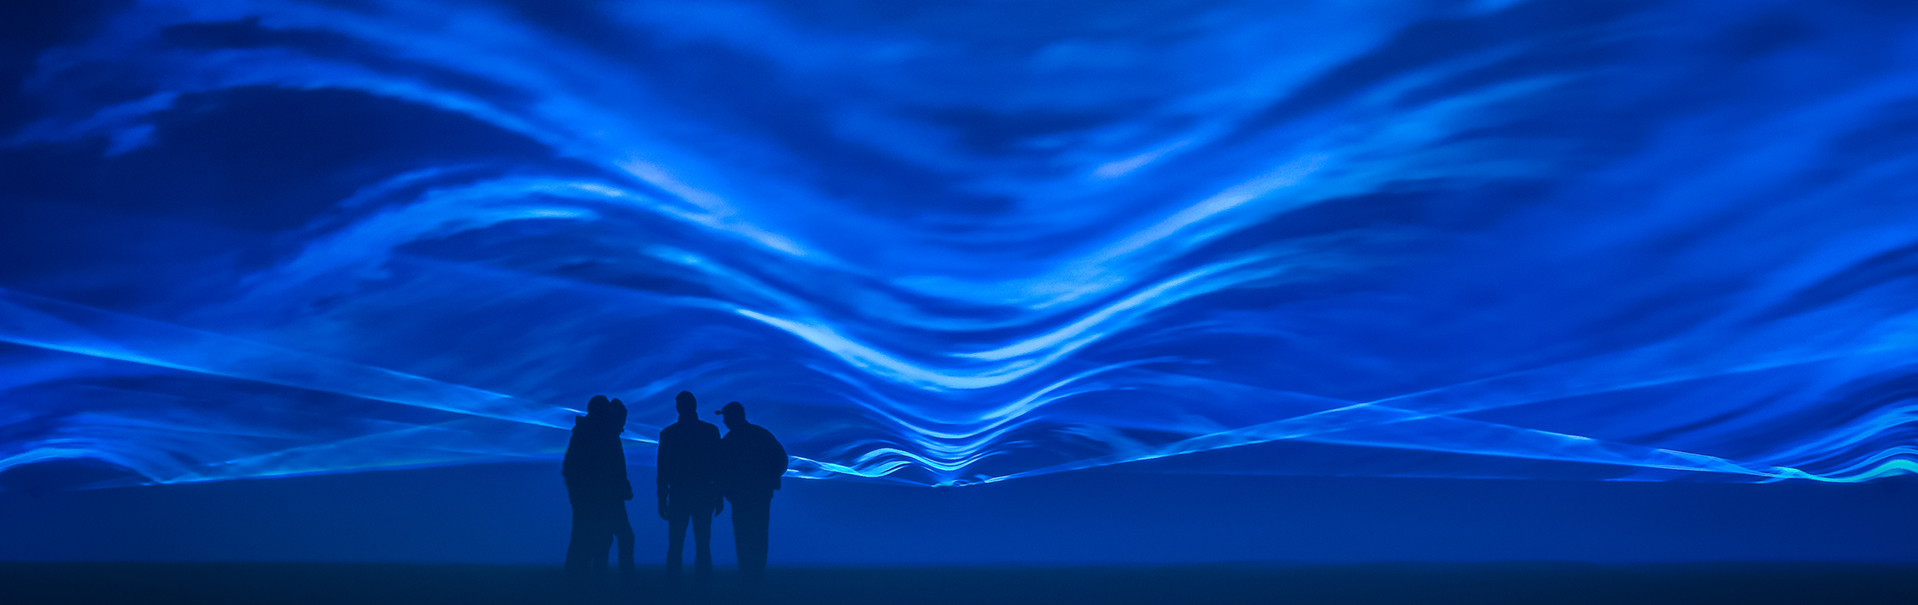 Die poetische Installation "Waterlicht" des niederländischen Künstlers Daan Roosegaarde wird das Gelände des Peter-Behrens-Baus in Oberhausen an zwei Abenden (5./6.11.2021) großräumig symbolisch mit Wasser fluten.